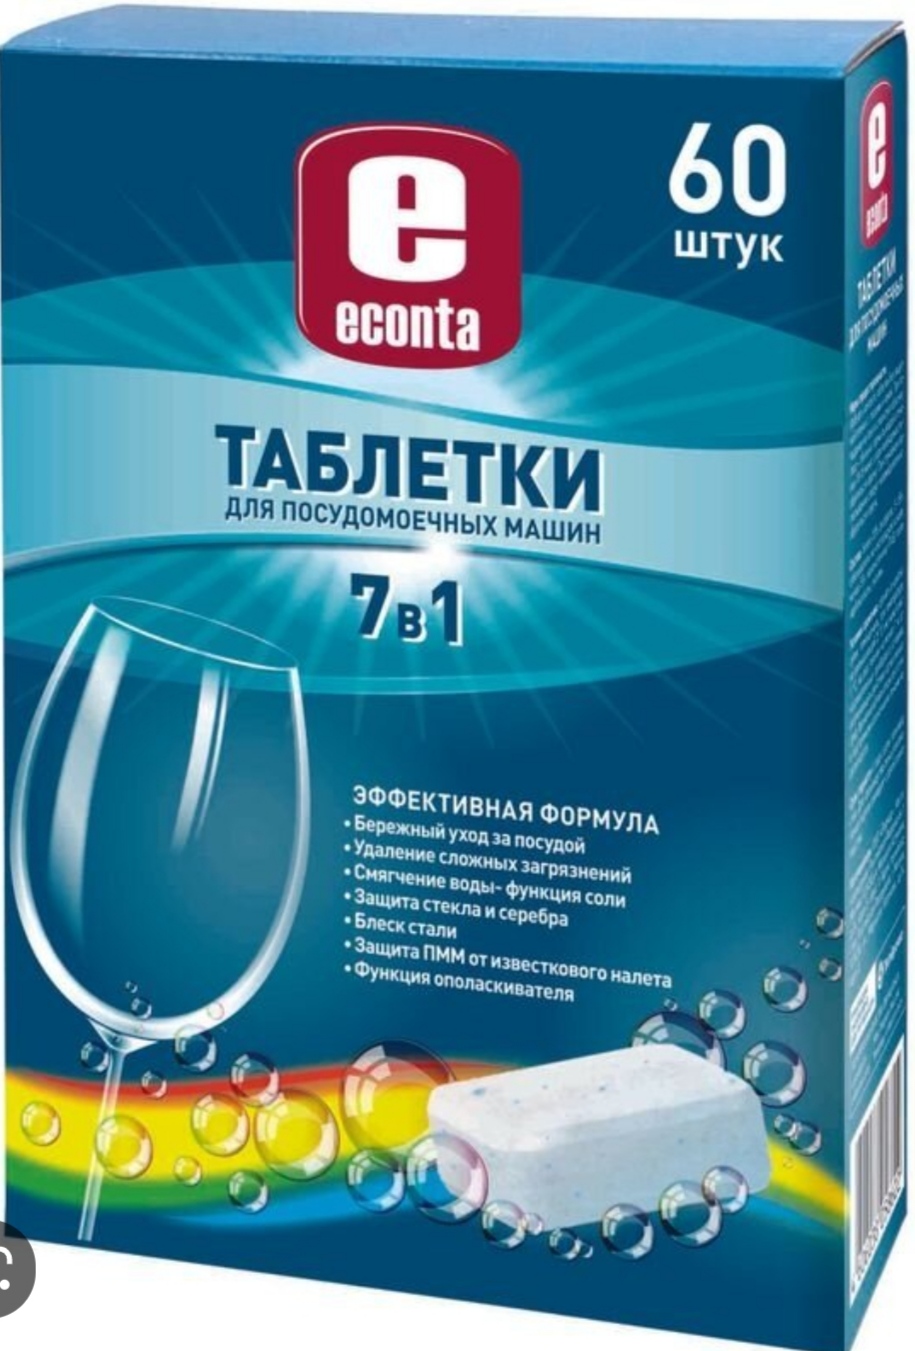 Таблетки для посудомоечной машины «Лента»: обзор и отзывы о 7-в-1 таблетках и других вариантах